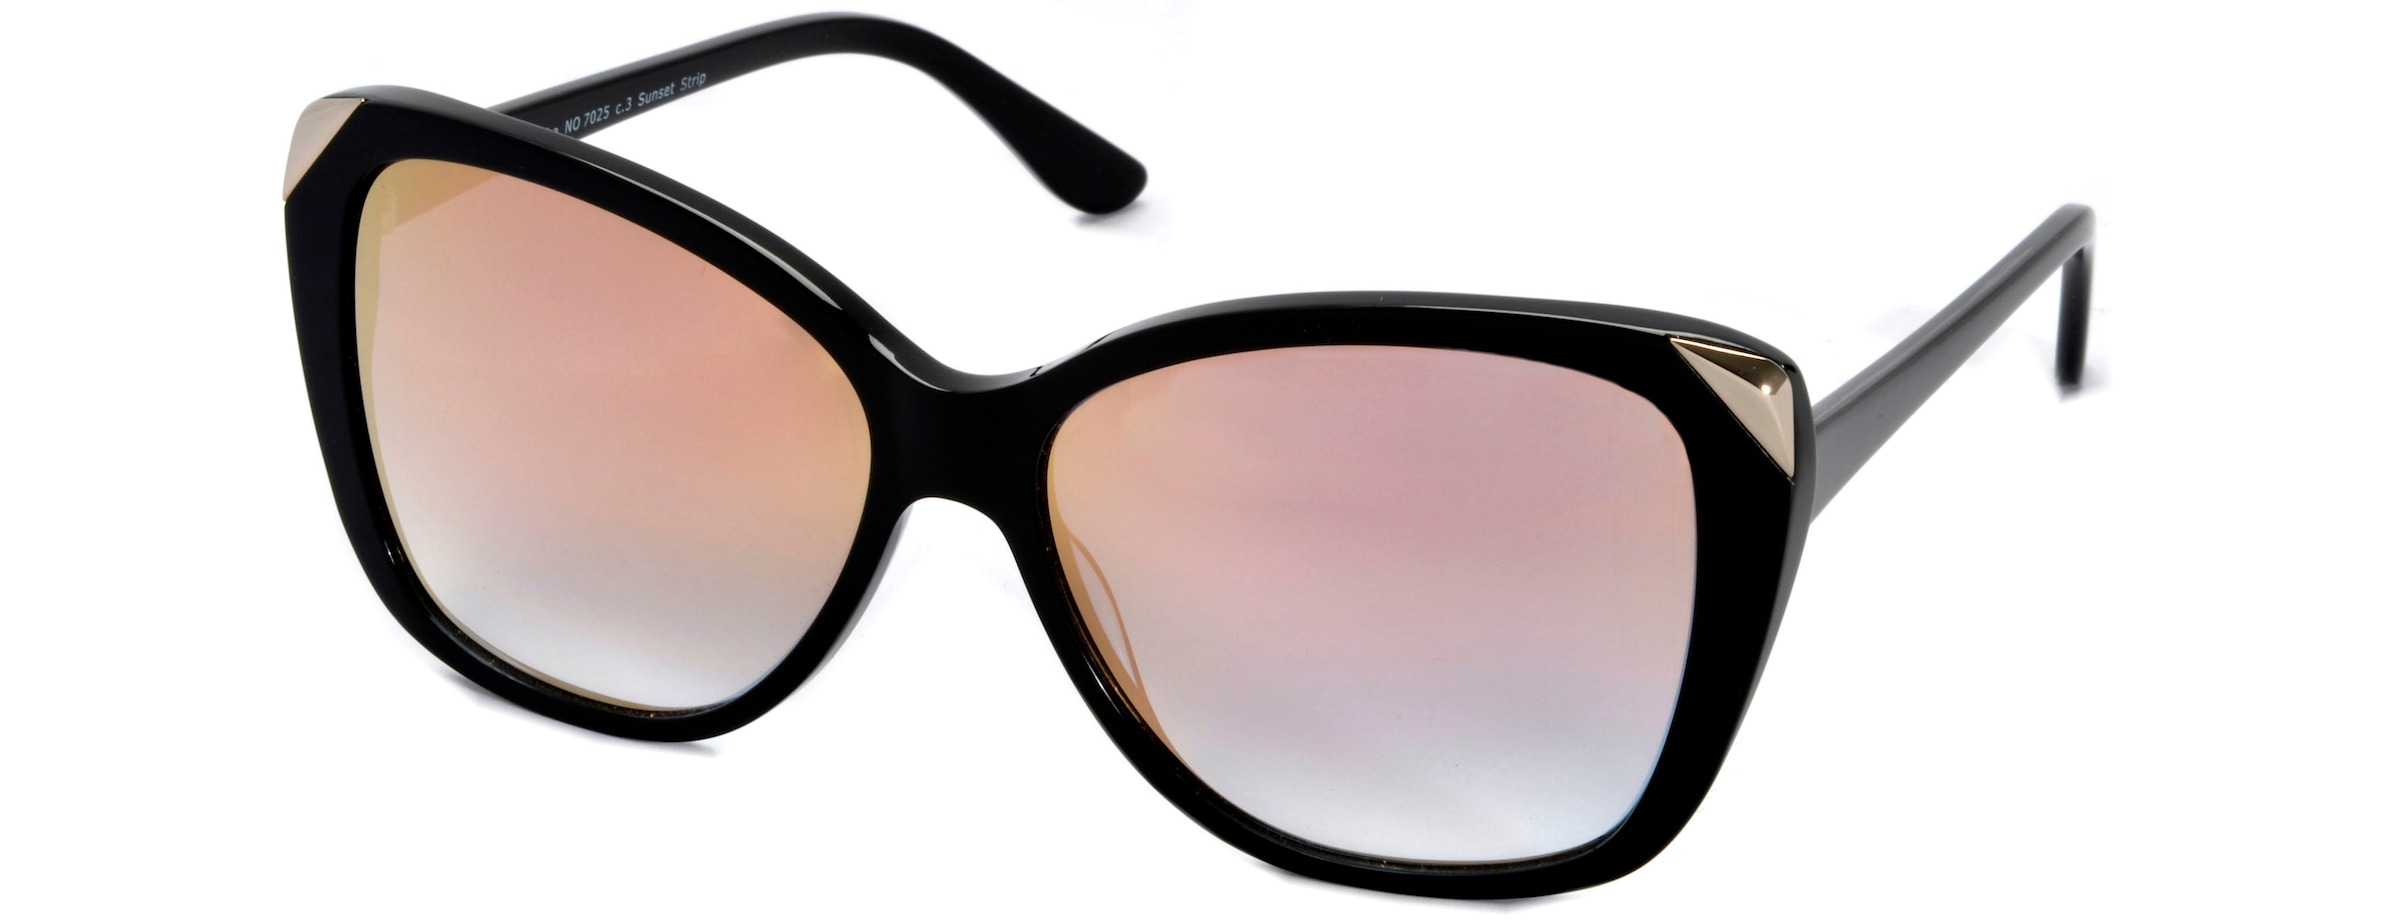 Sonnenbrillen in Schwarz jetzt günstig auf Raten bestellen ▻ UNIVERSAL